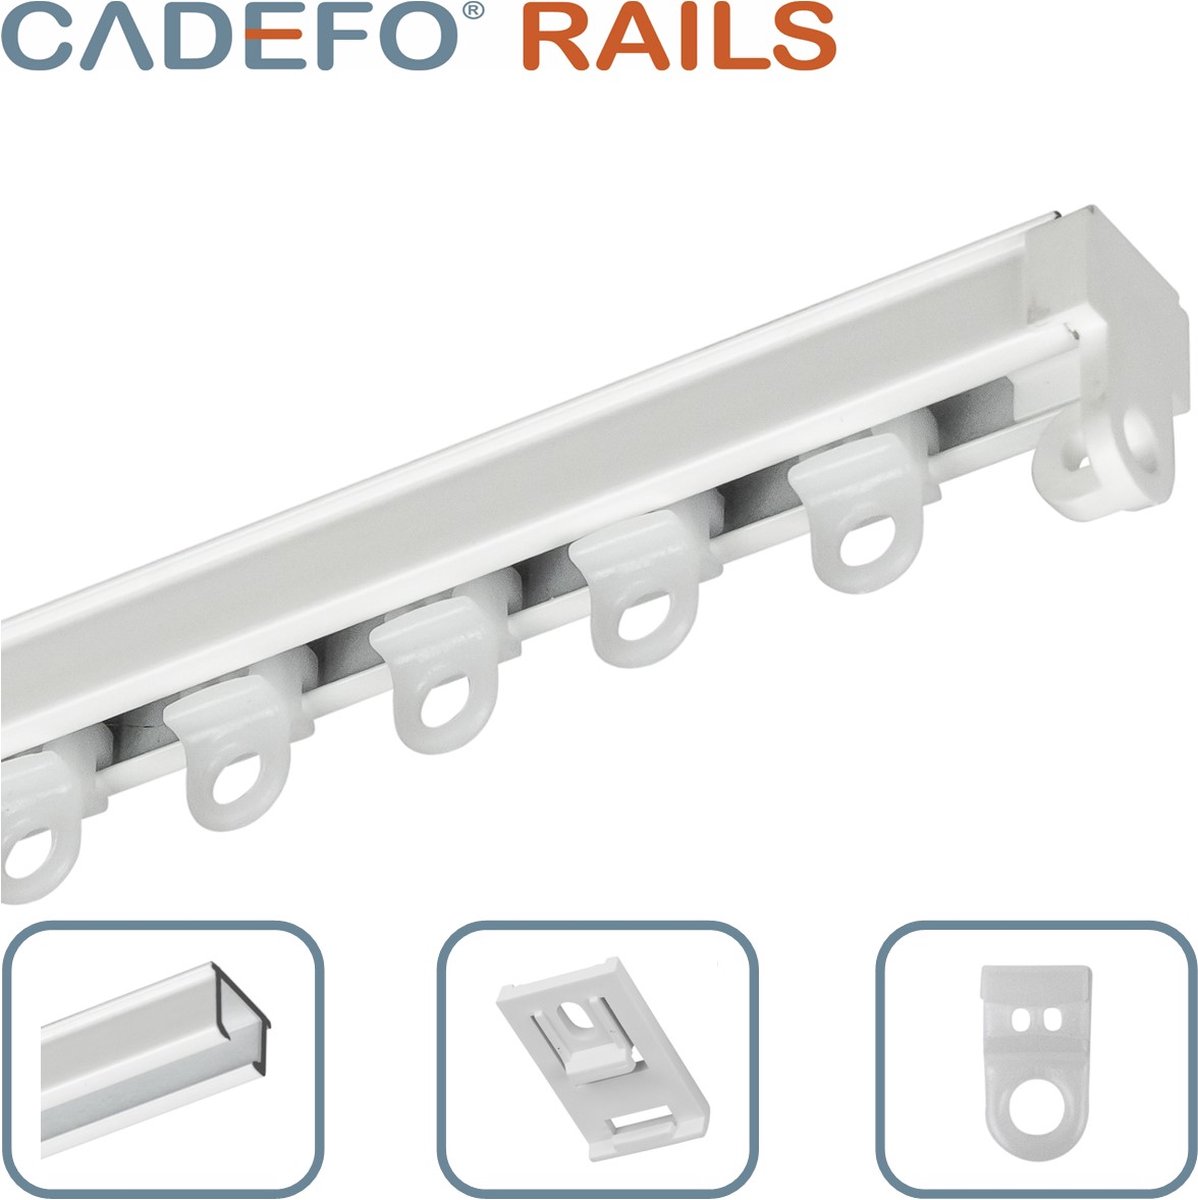 CADEFO RAILS (201 - 250 cm) Gordijnrails - Compleet op maat! - UIT 1 STUK - Leverbaar tot 6 meter - Plafondbevestiging - Lengte 211 cm